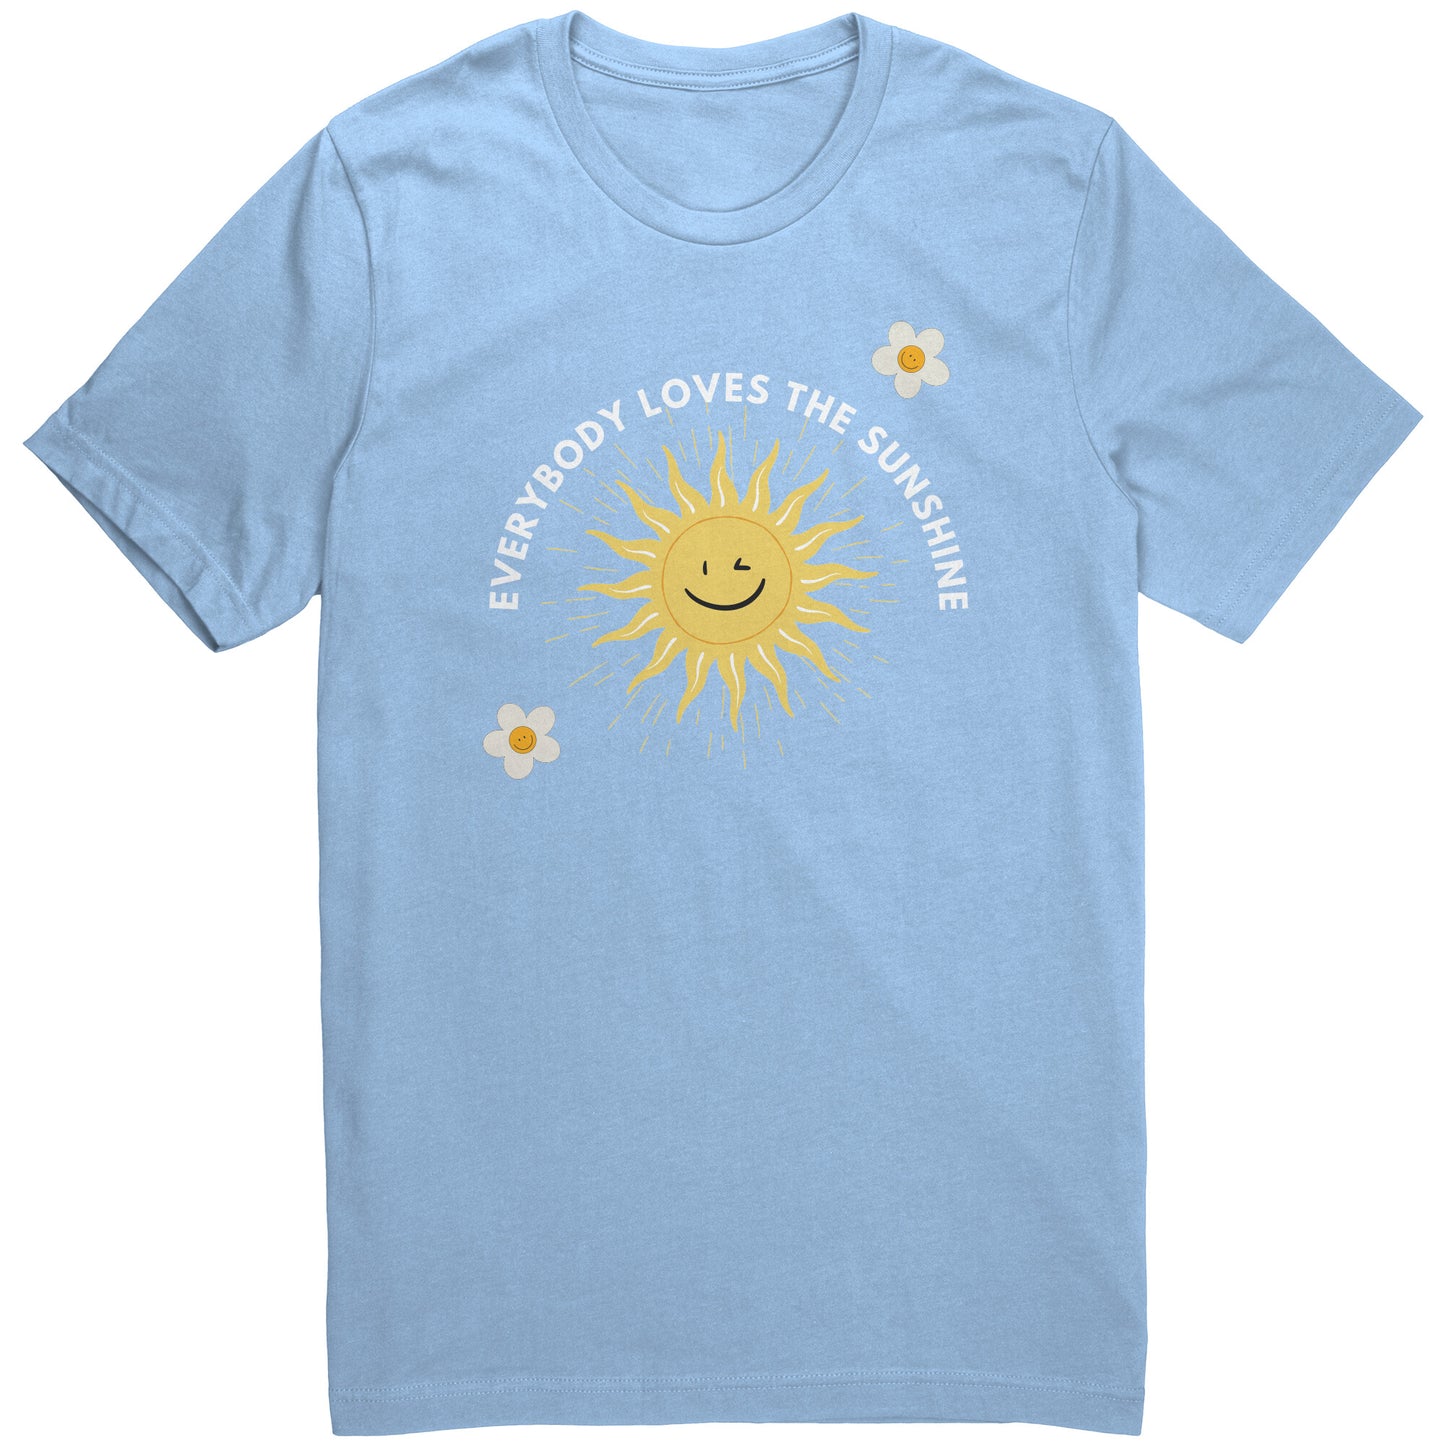 Loving sunshine Adult Unisex T-shirt